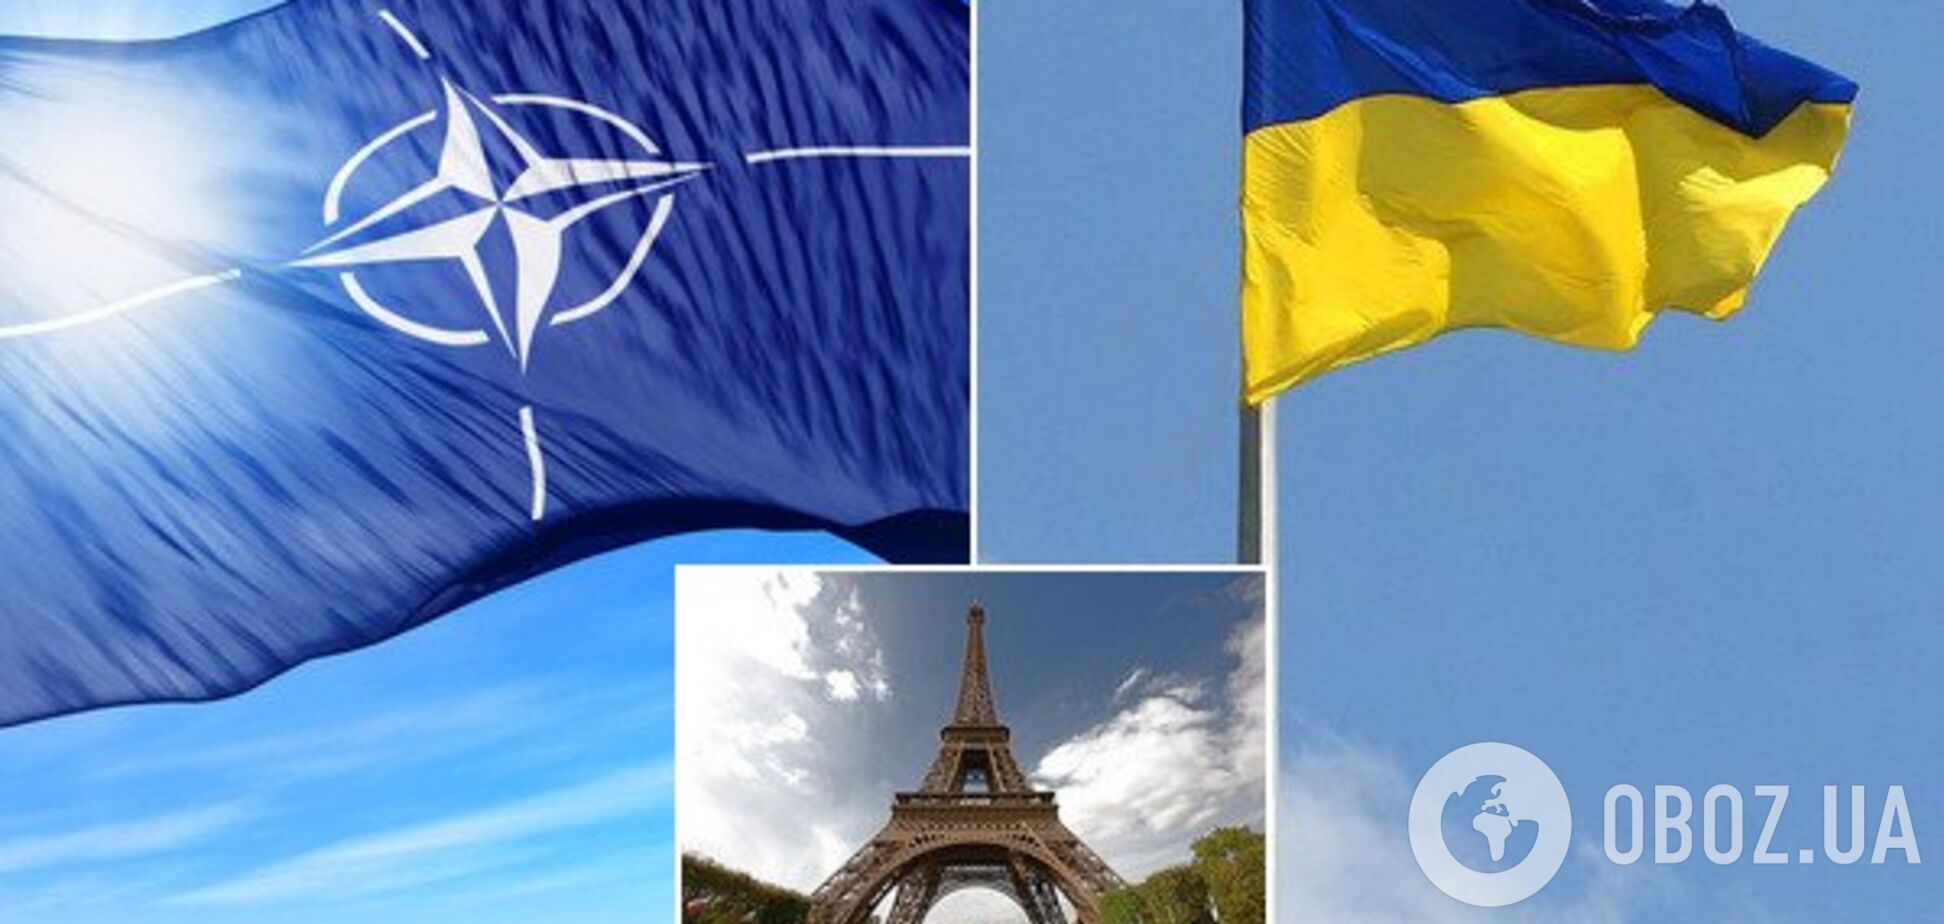 Франция давила на НАТО из-за украинских моряков